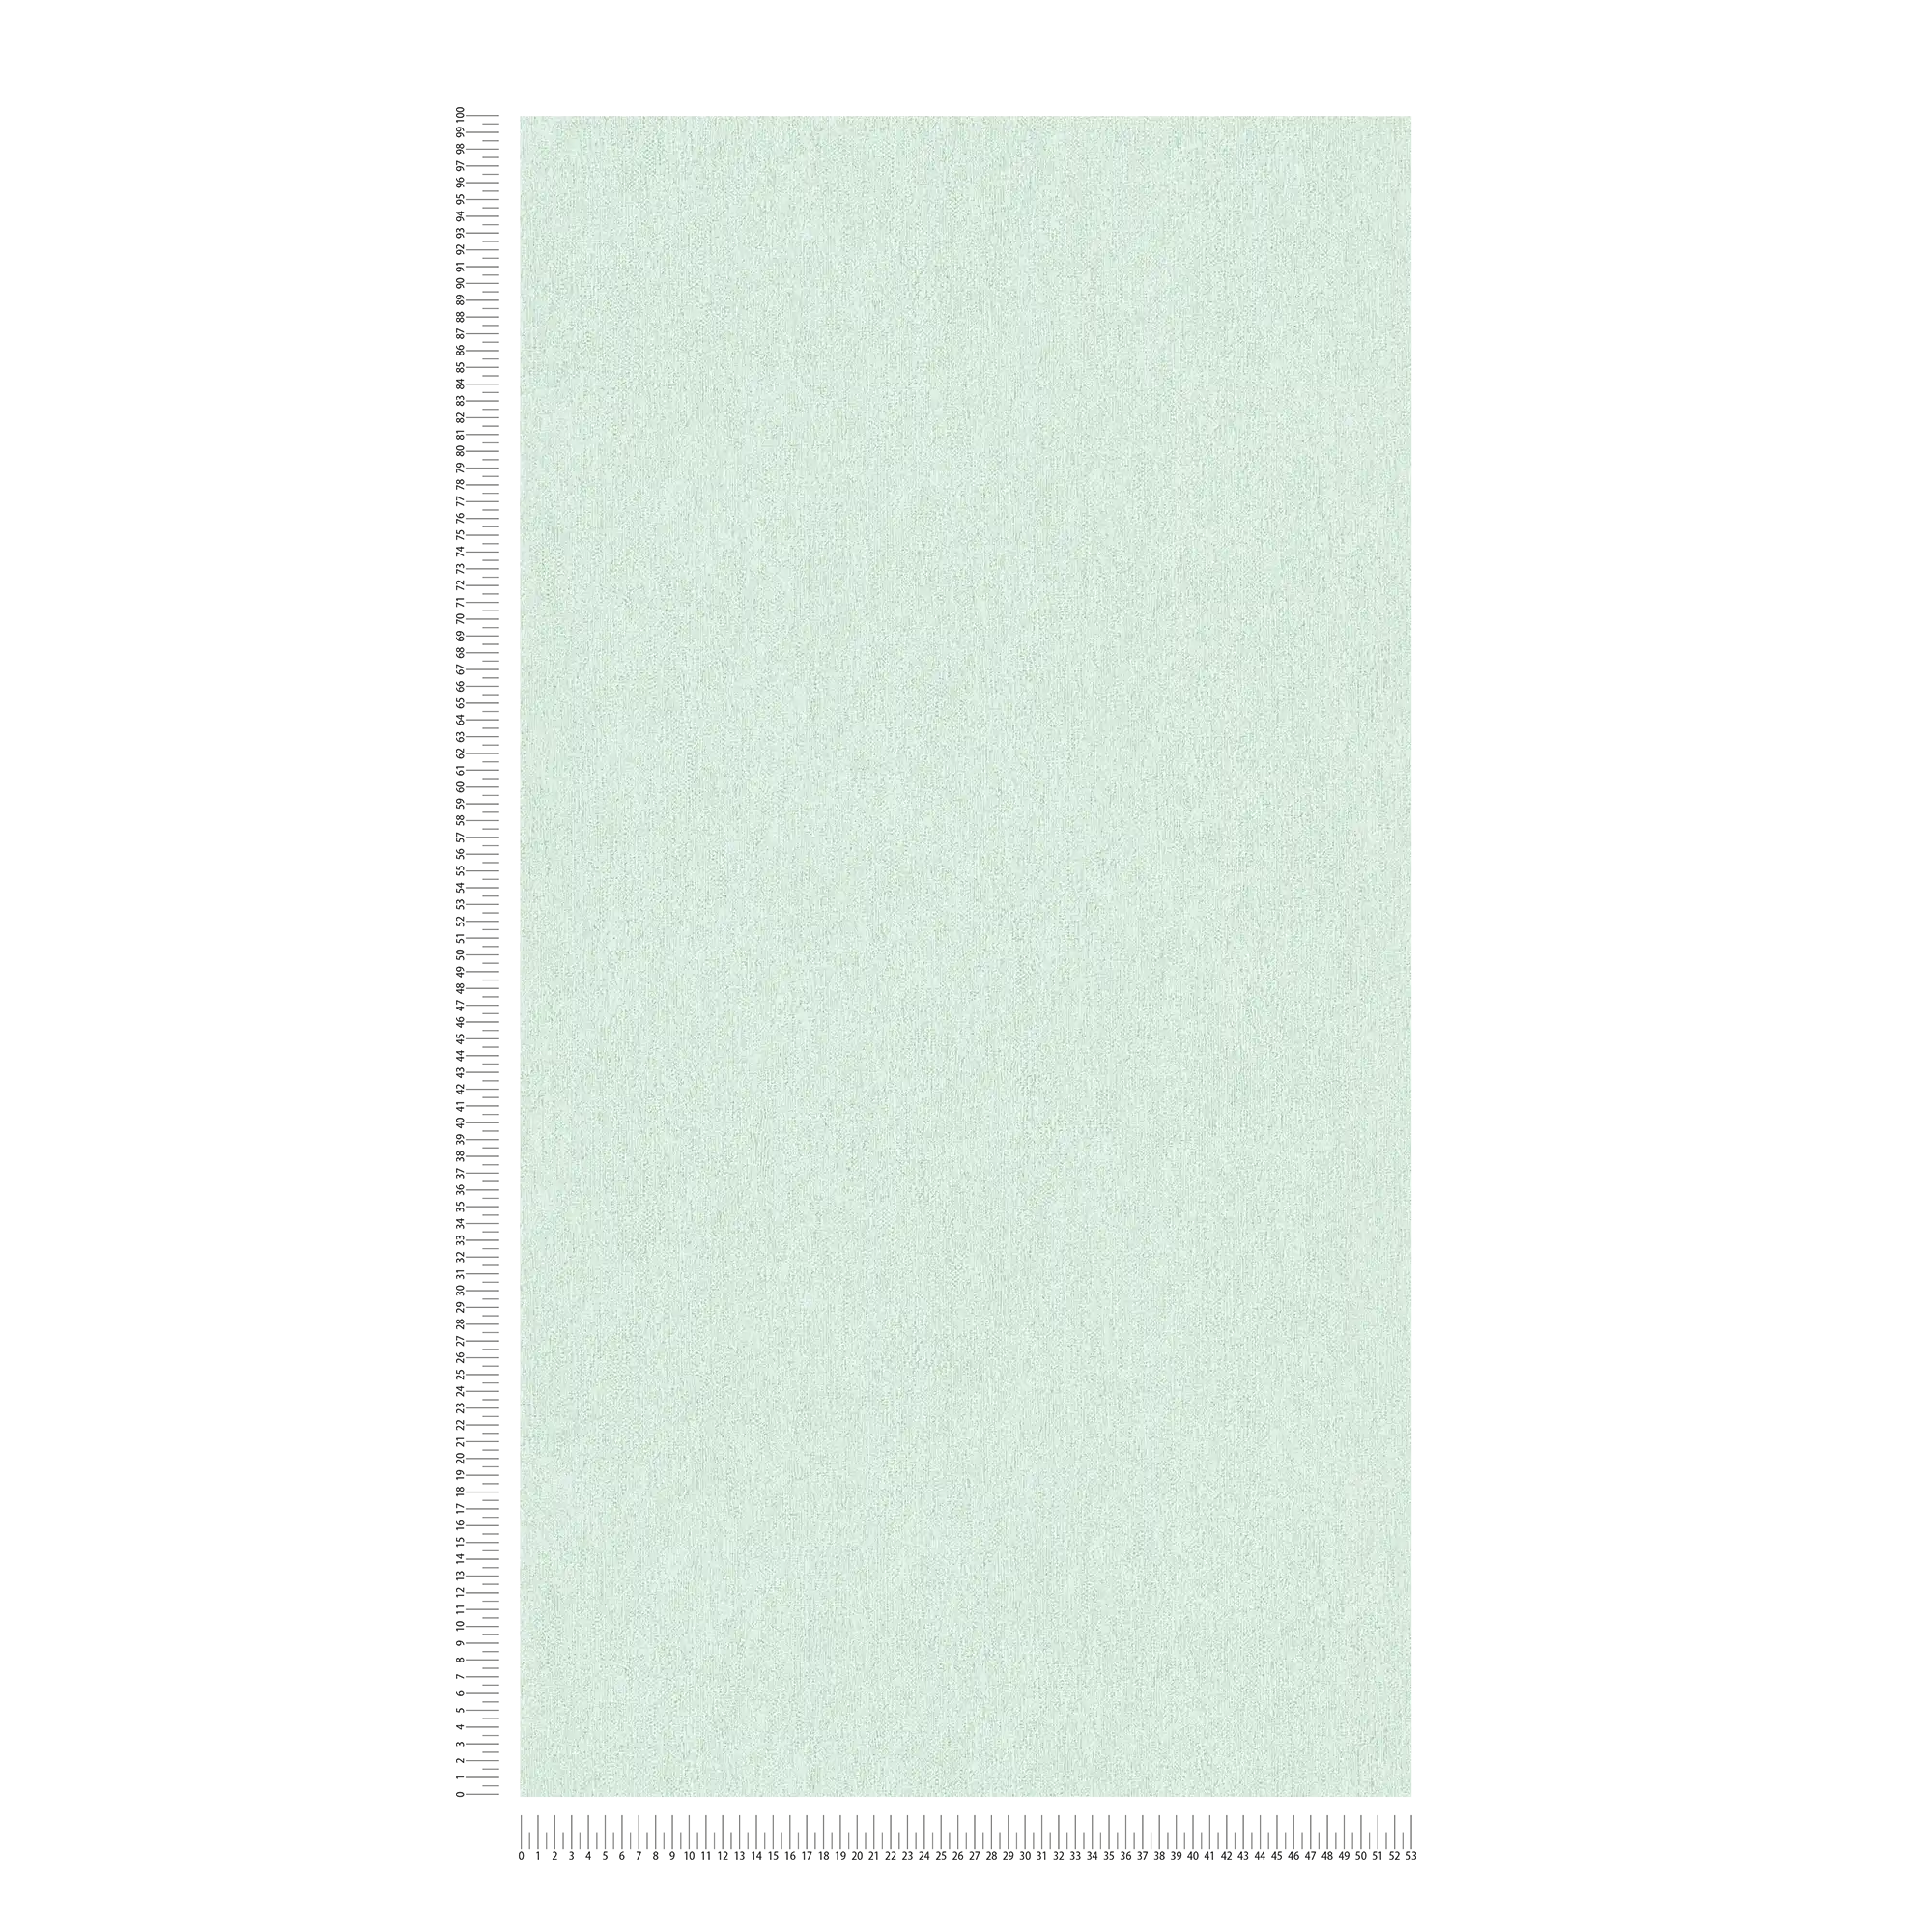             Carta da parati in tessuto non tessuto opaco e liscio con motivo a struttura - verde
        